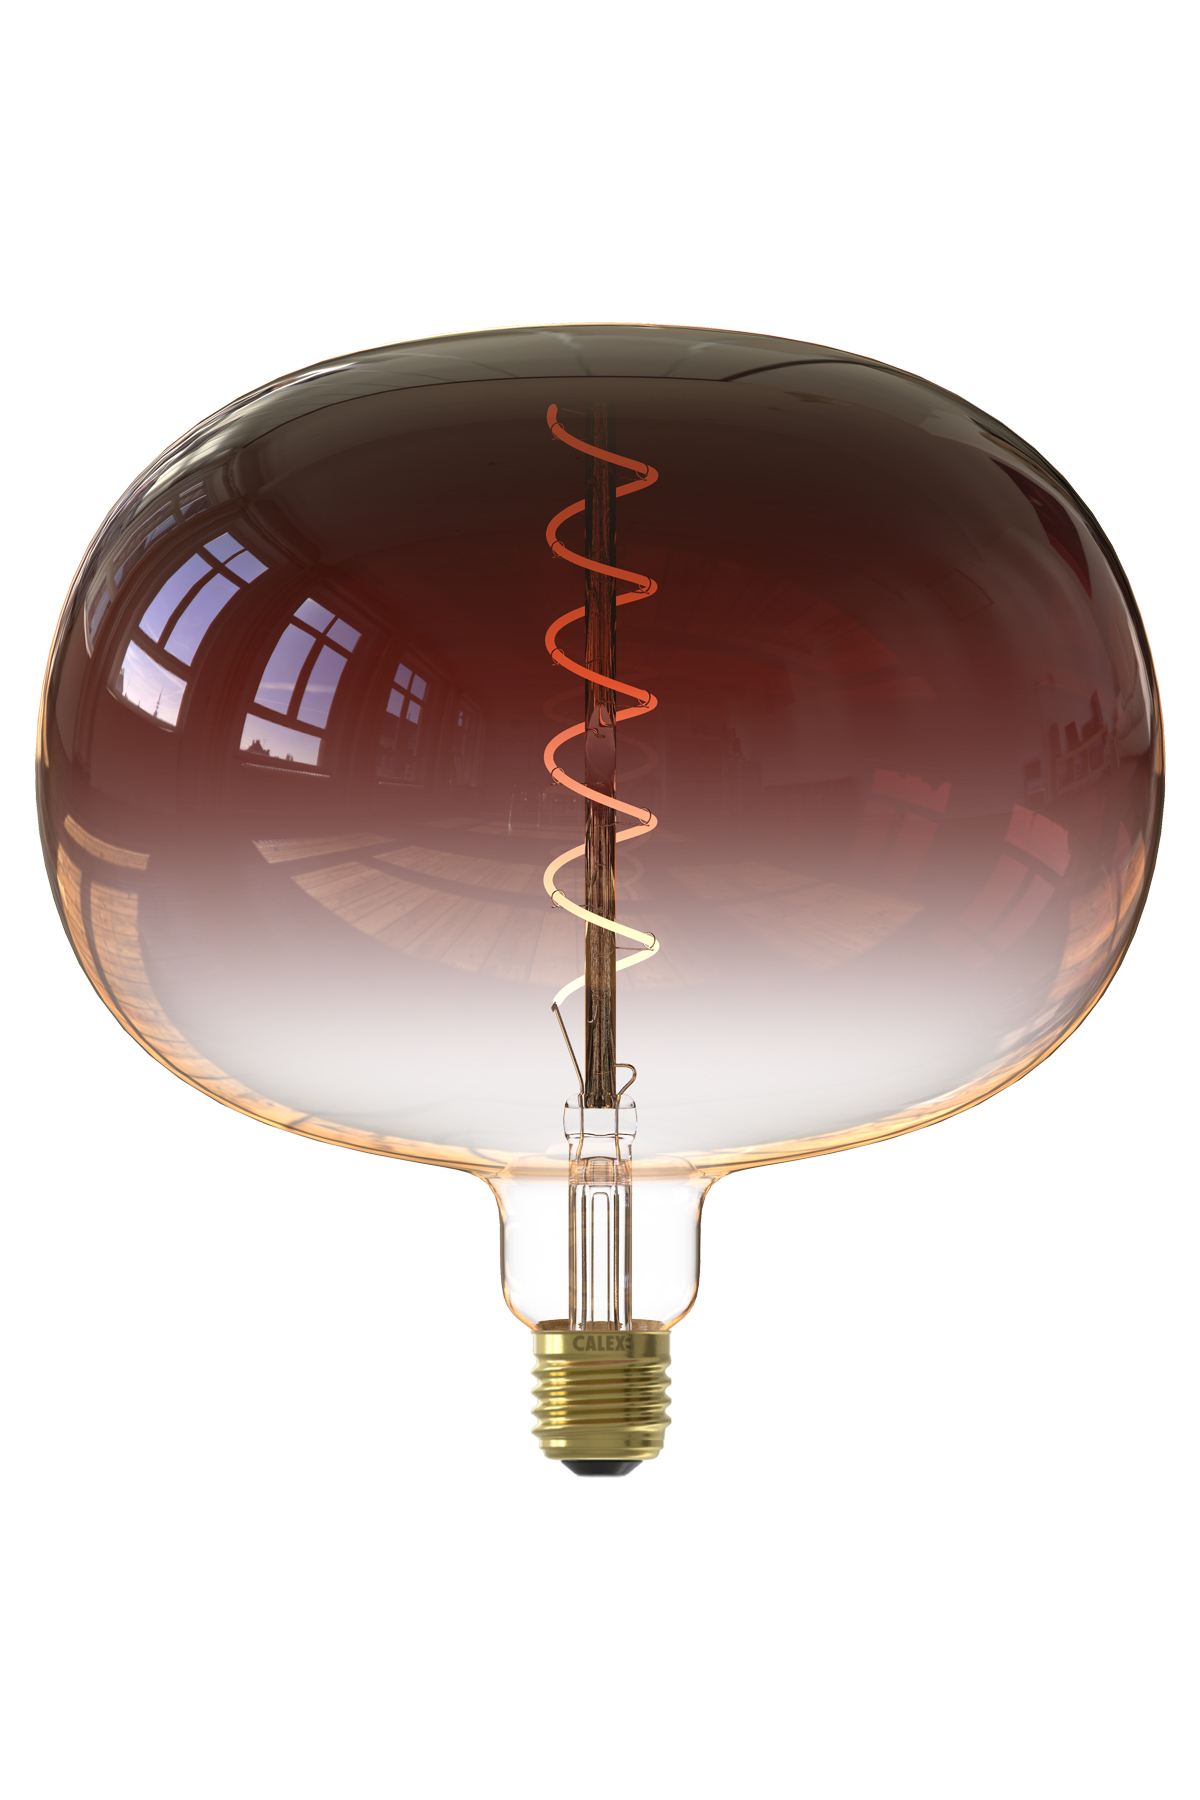 Lampe LED - D 22 cm - 5W - 130 LM - Marron